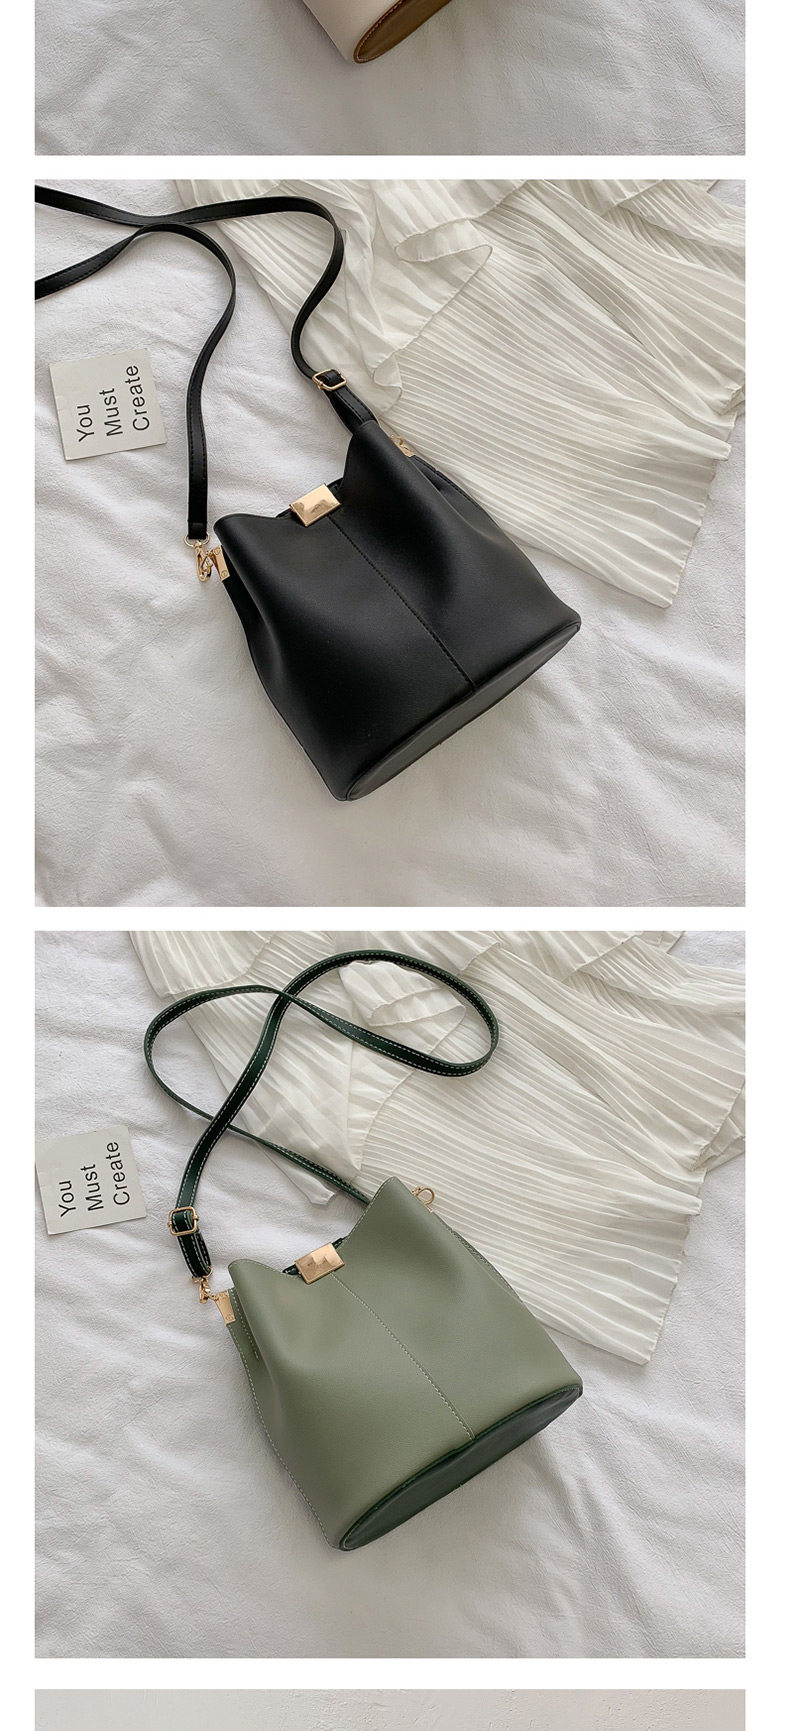  Black Shoulder Diagonal Handbag,Handbags